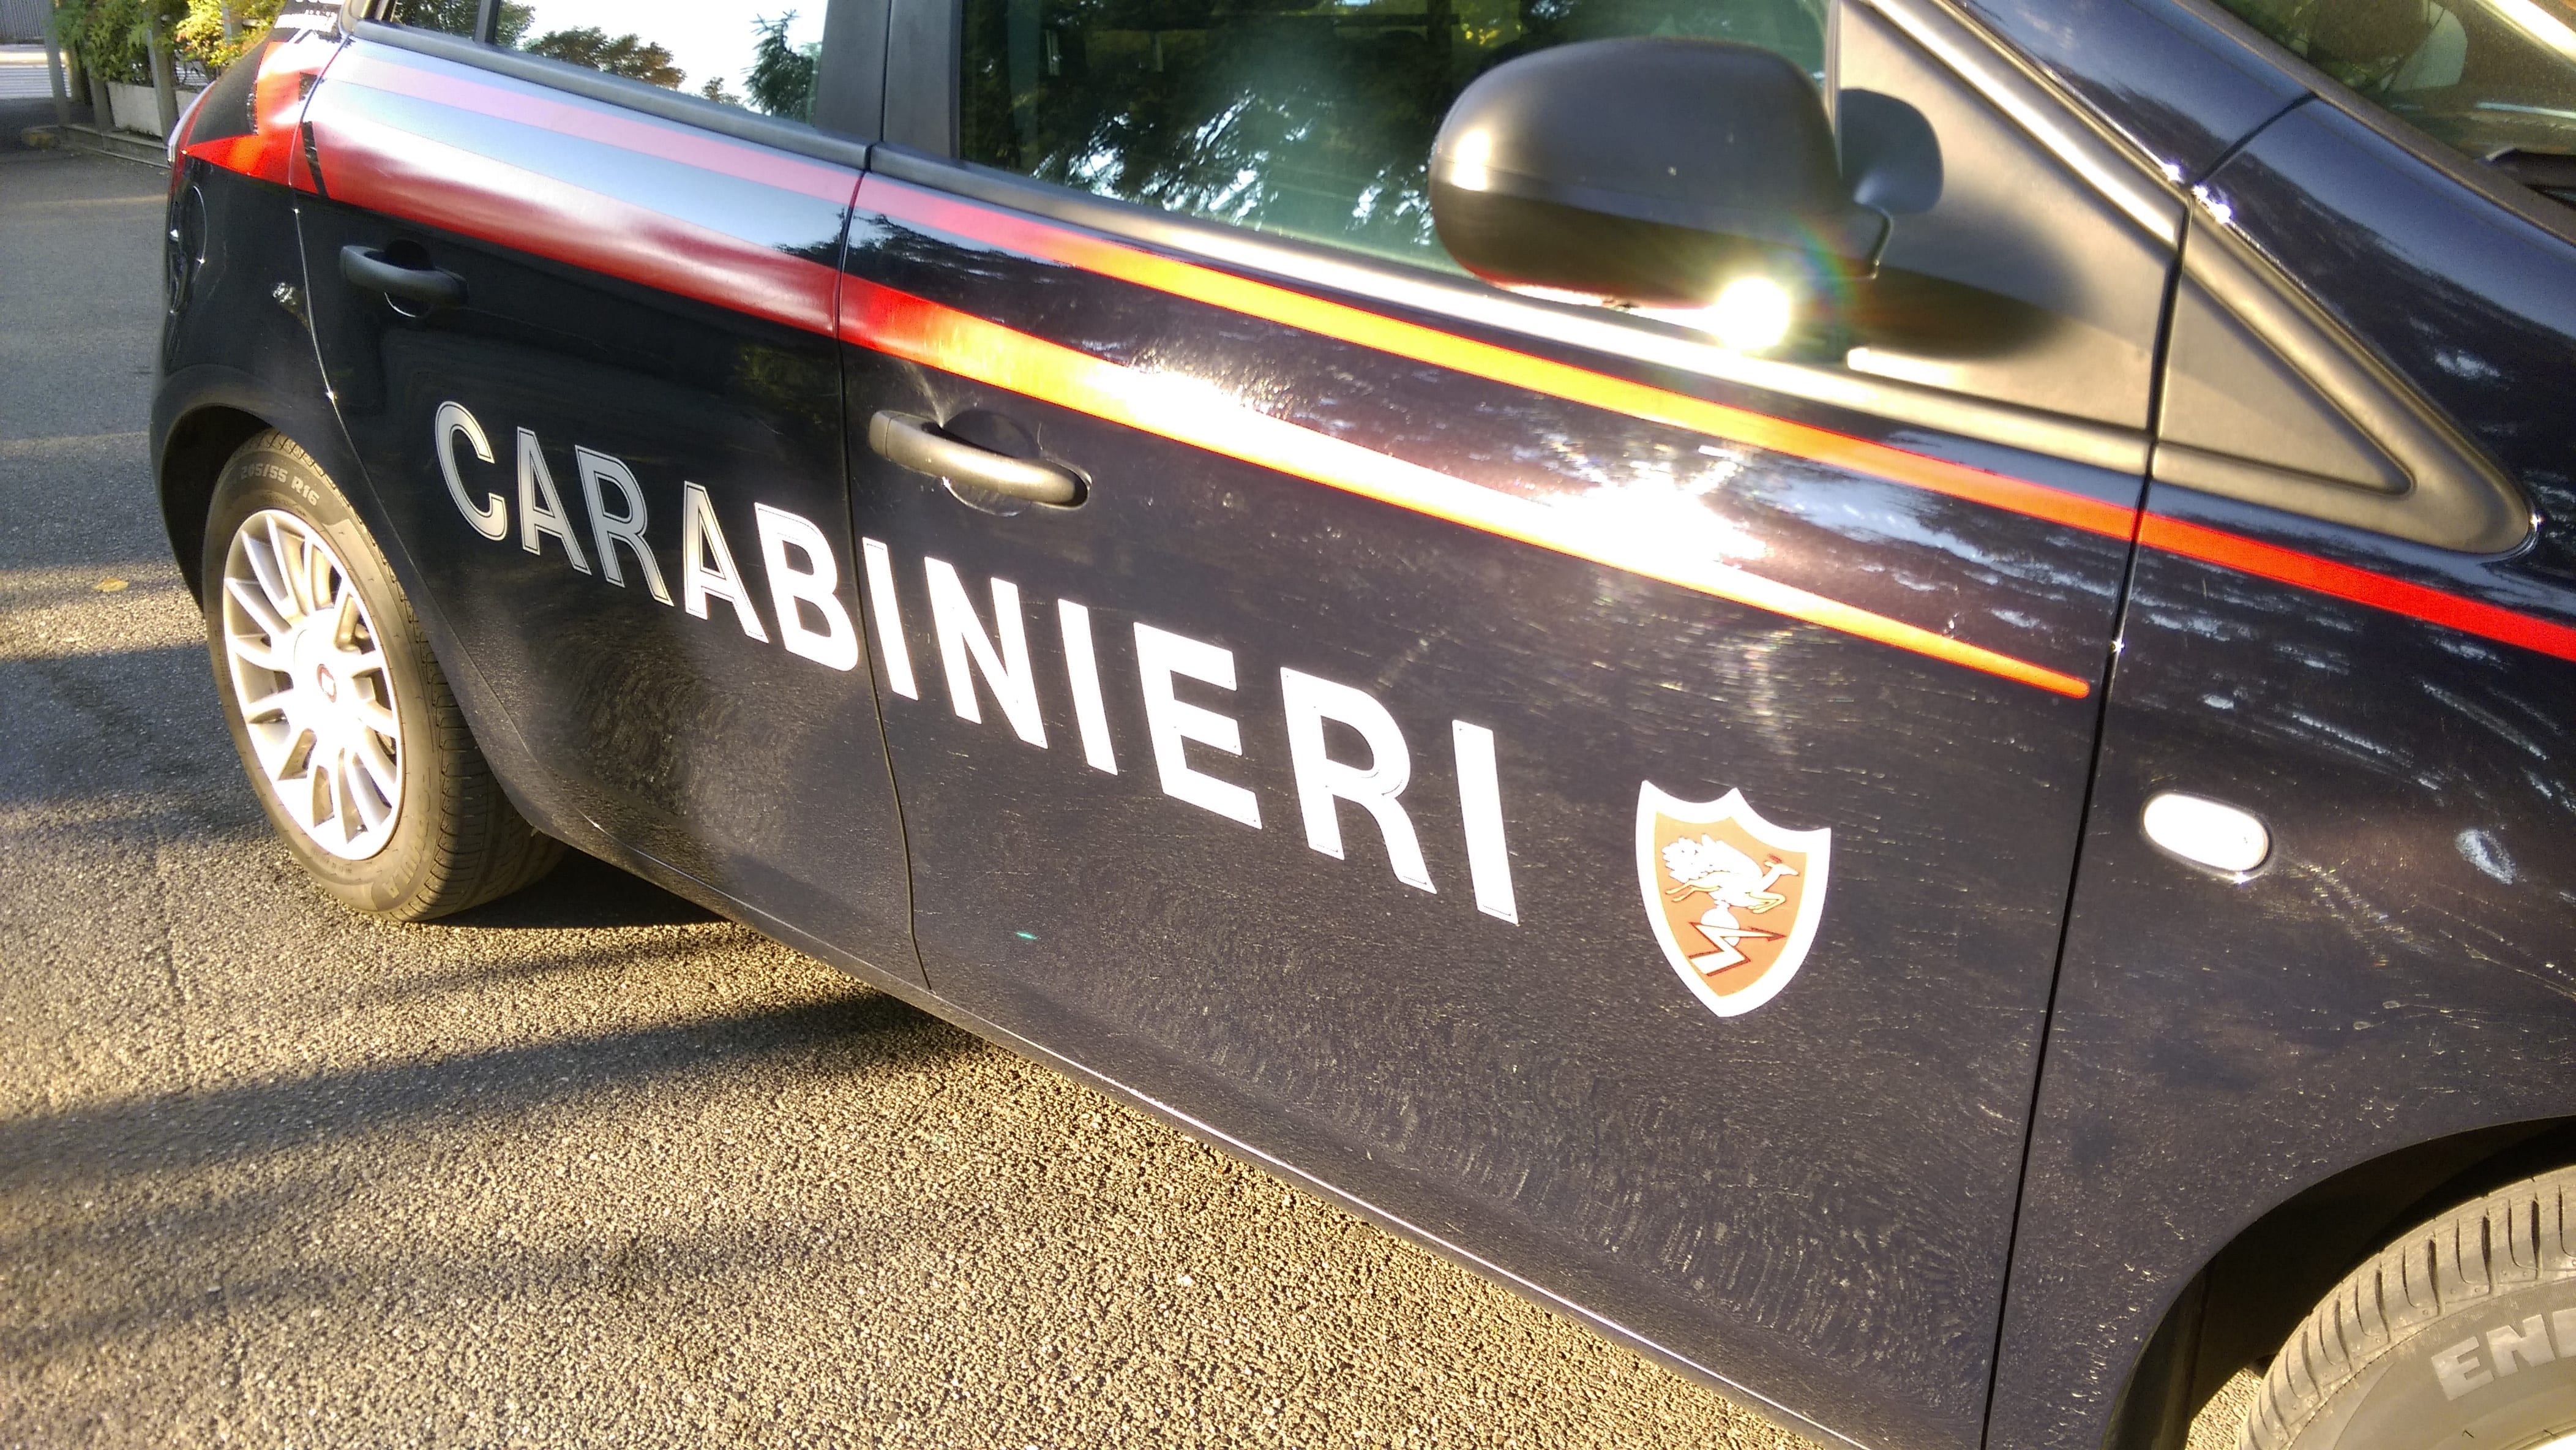 Con l’auto rubata a Lazzate vanno a svaligiare macchina del caffè in ospedale: arrestati